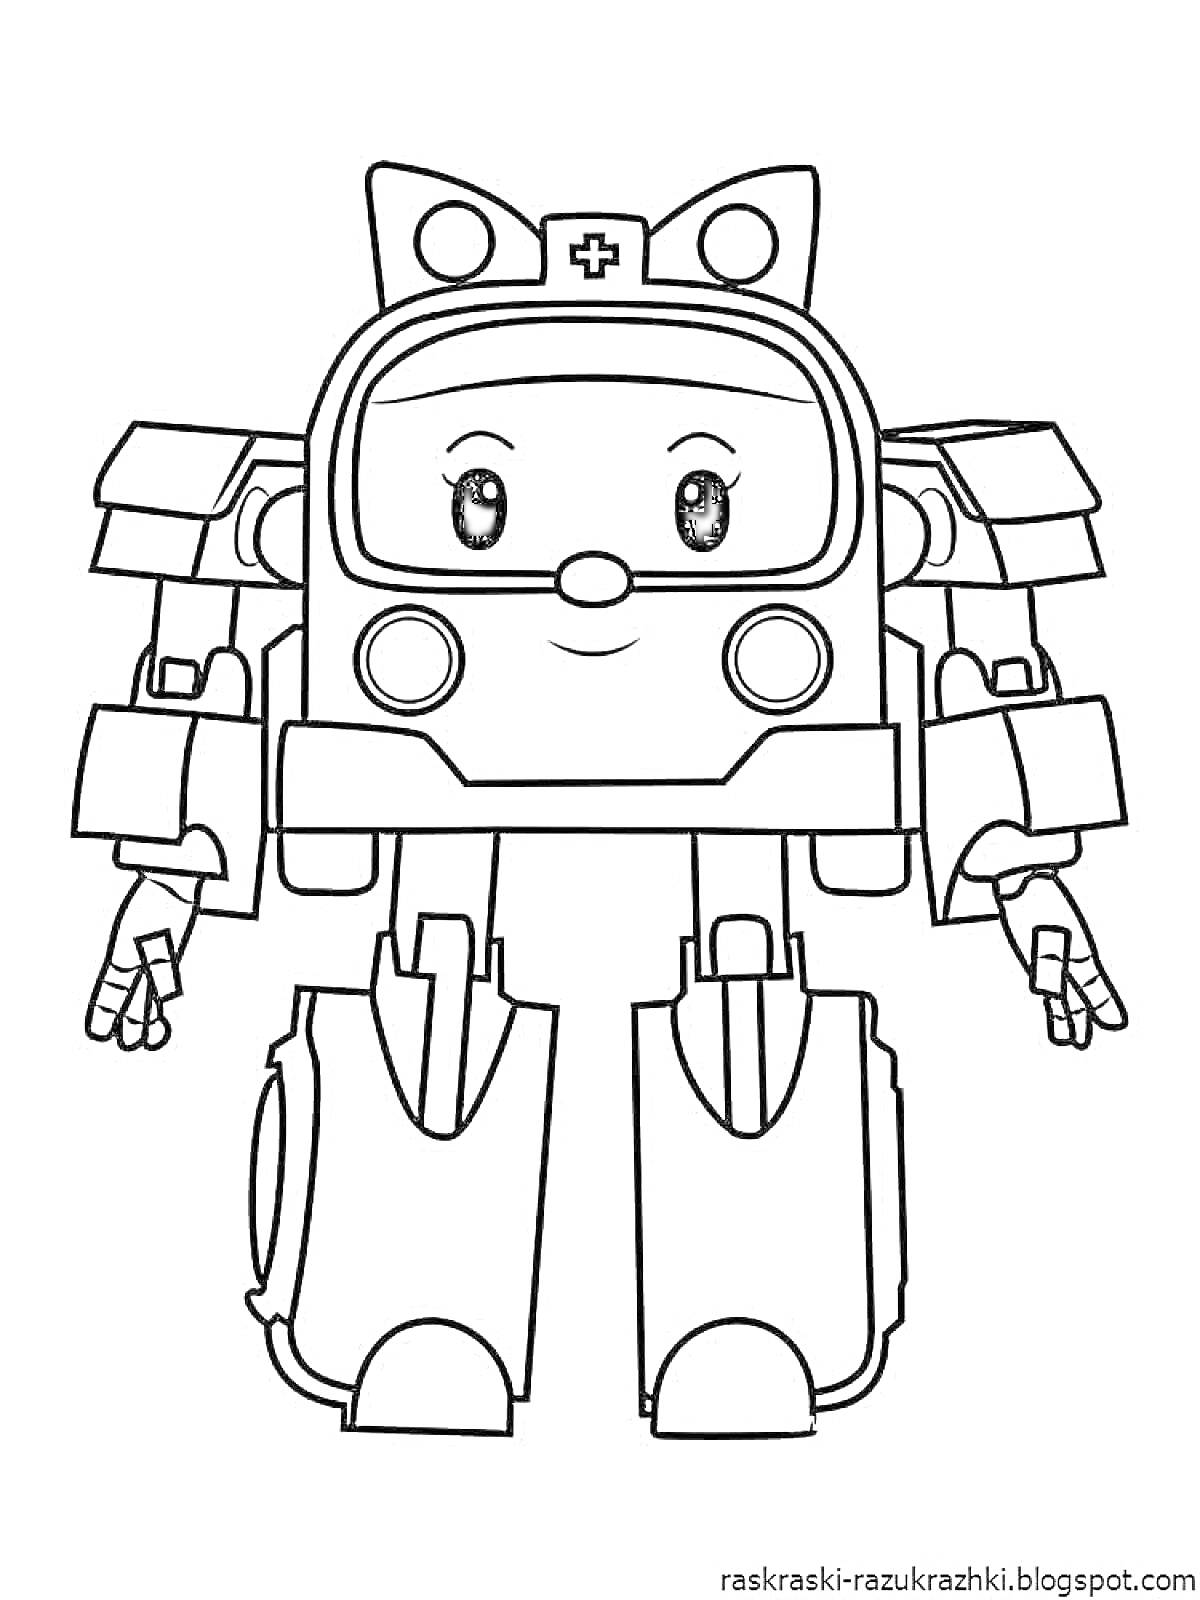 Робот-машина с милым лицом и ушками, эмблемой с крестом на лбу, с большими ногами и руками с пальцами